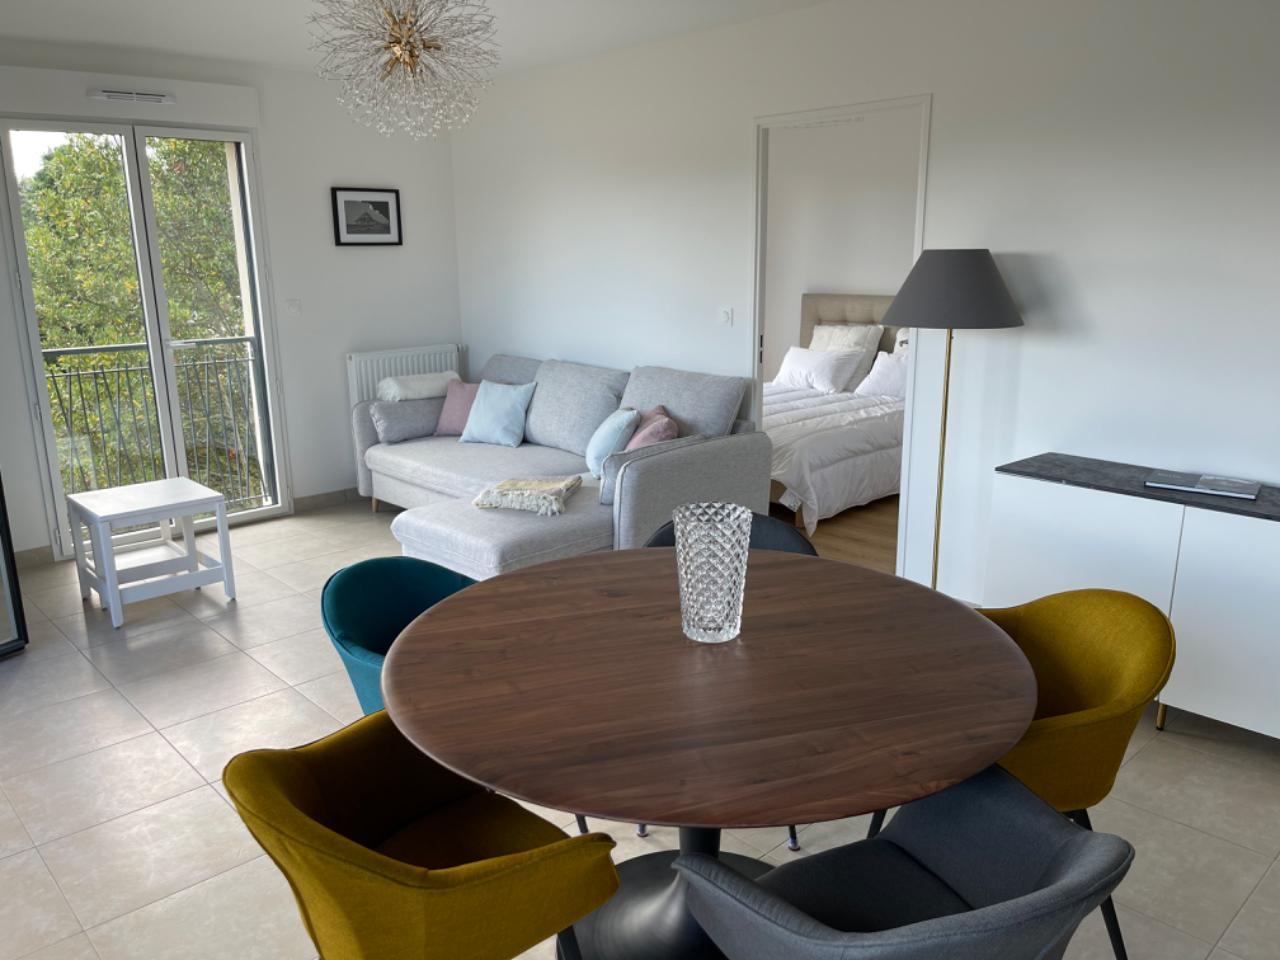 Hôte GreenGo: BELLA CRUZ, 66 m2 premium, borne recharge, plage, commerces, cadre idéal pour votre séjour à Dinard - Image 3